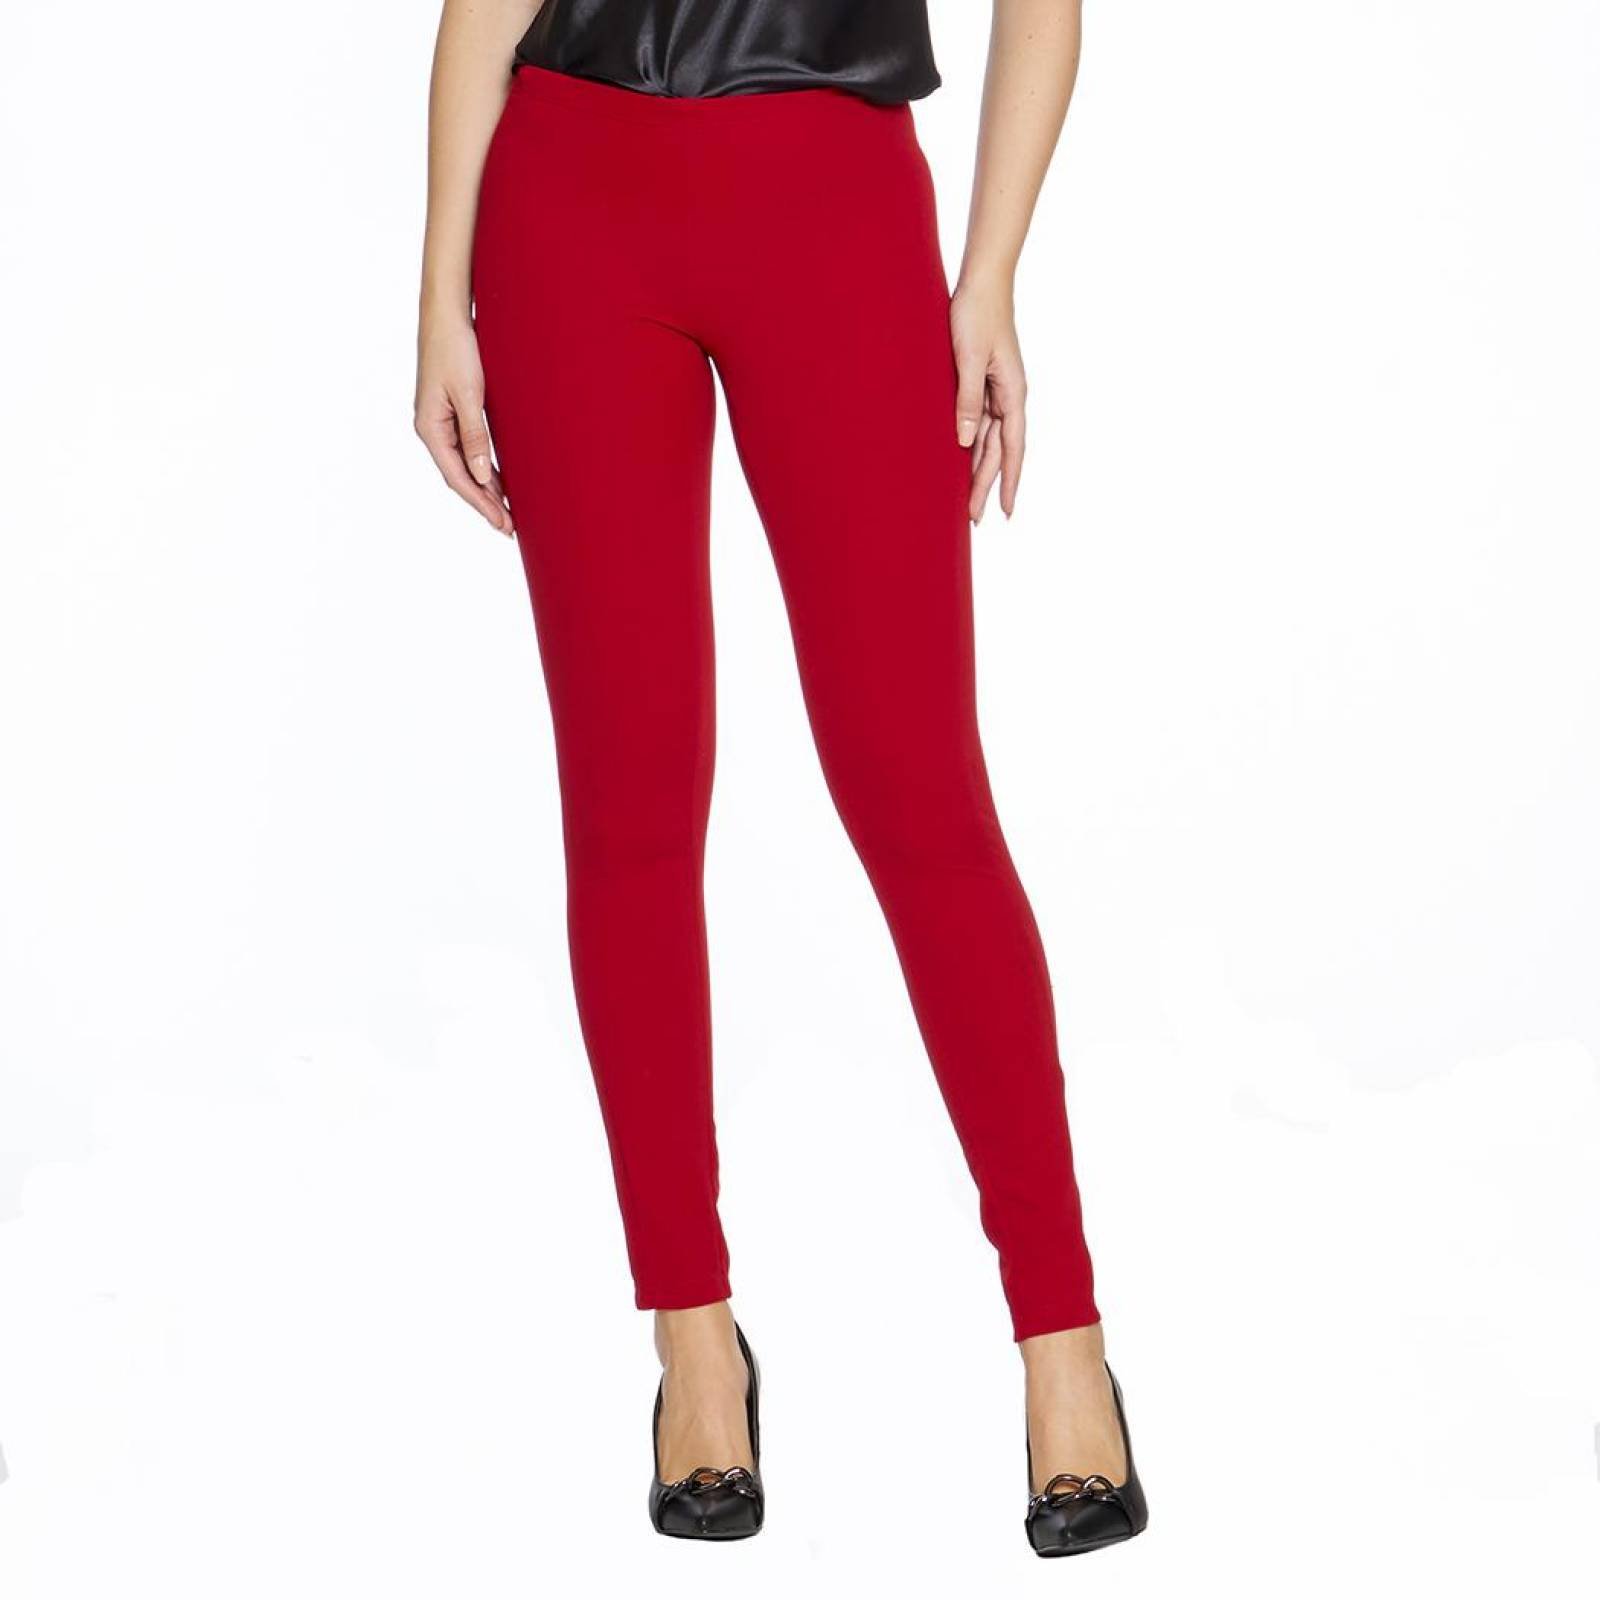 Leggins Mujer Moda Casual Rojo Liso Tiro Alto Sin Costura Ajustado Básico  Cómodo Con Cortes Laterale